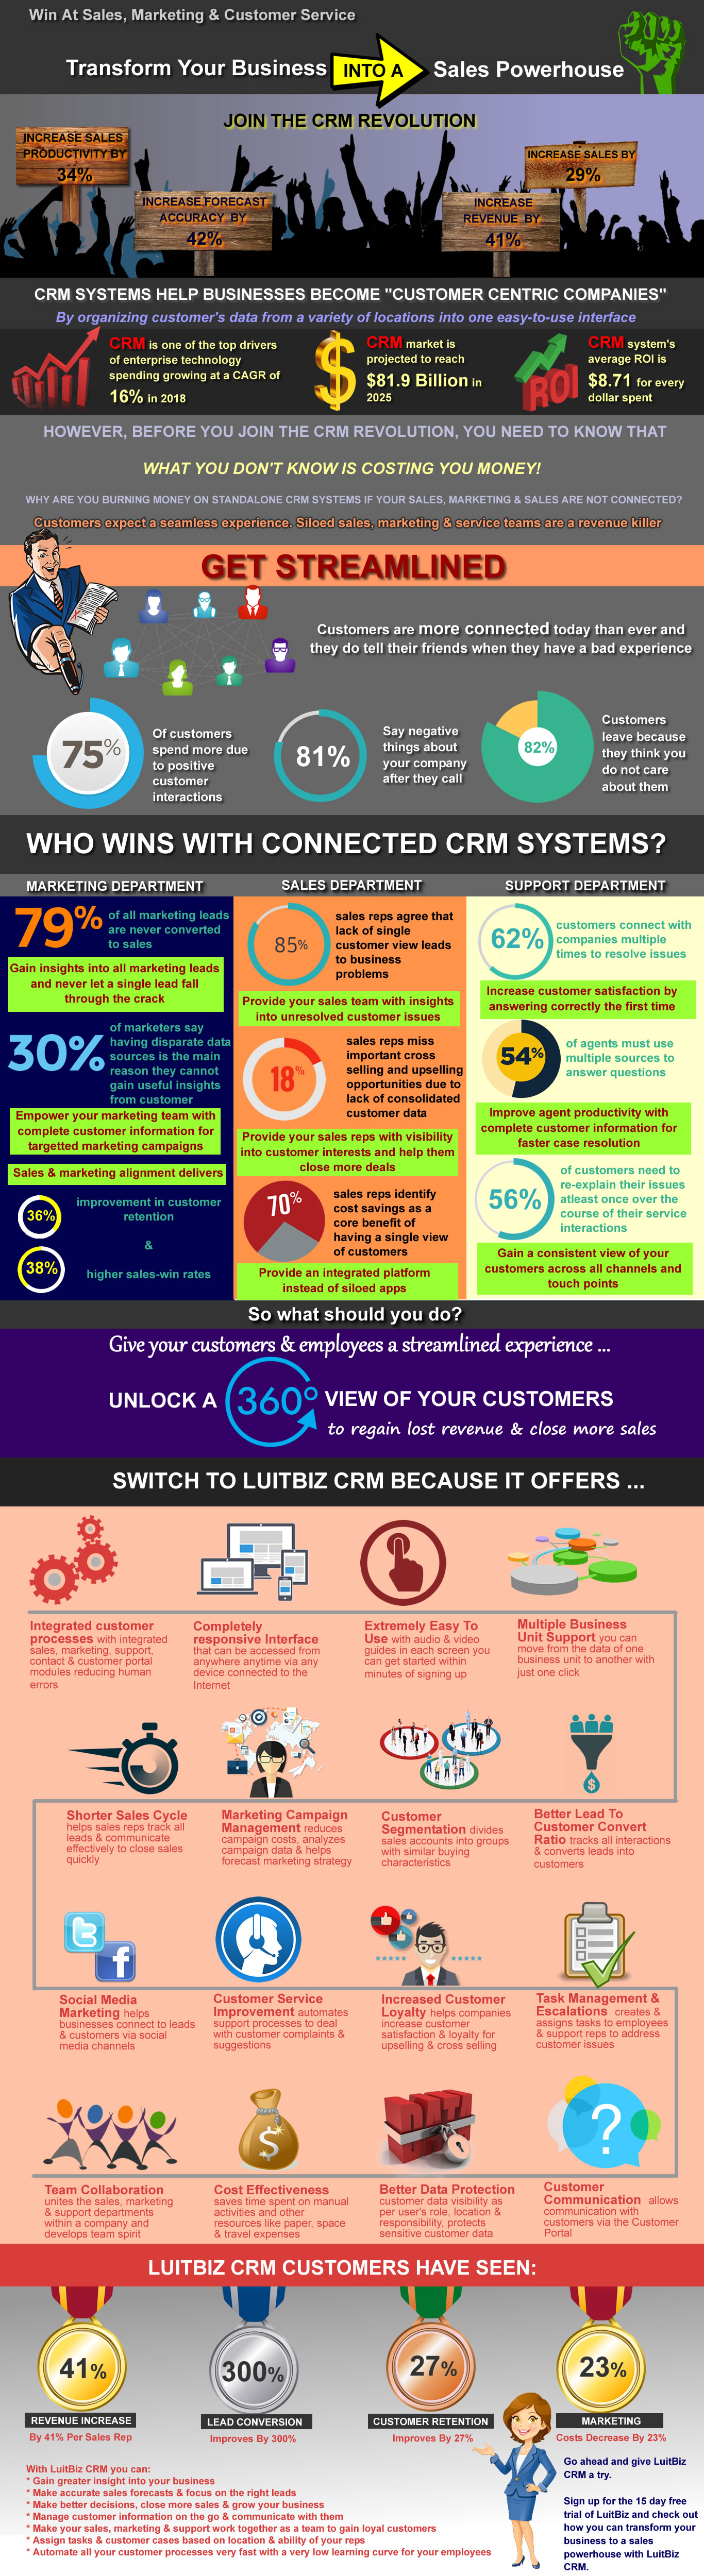 LuitBiz CRM Infographic